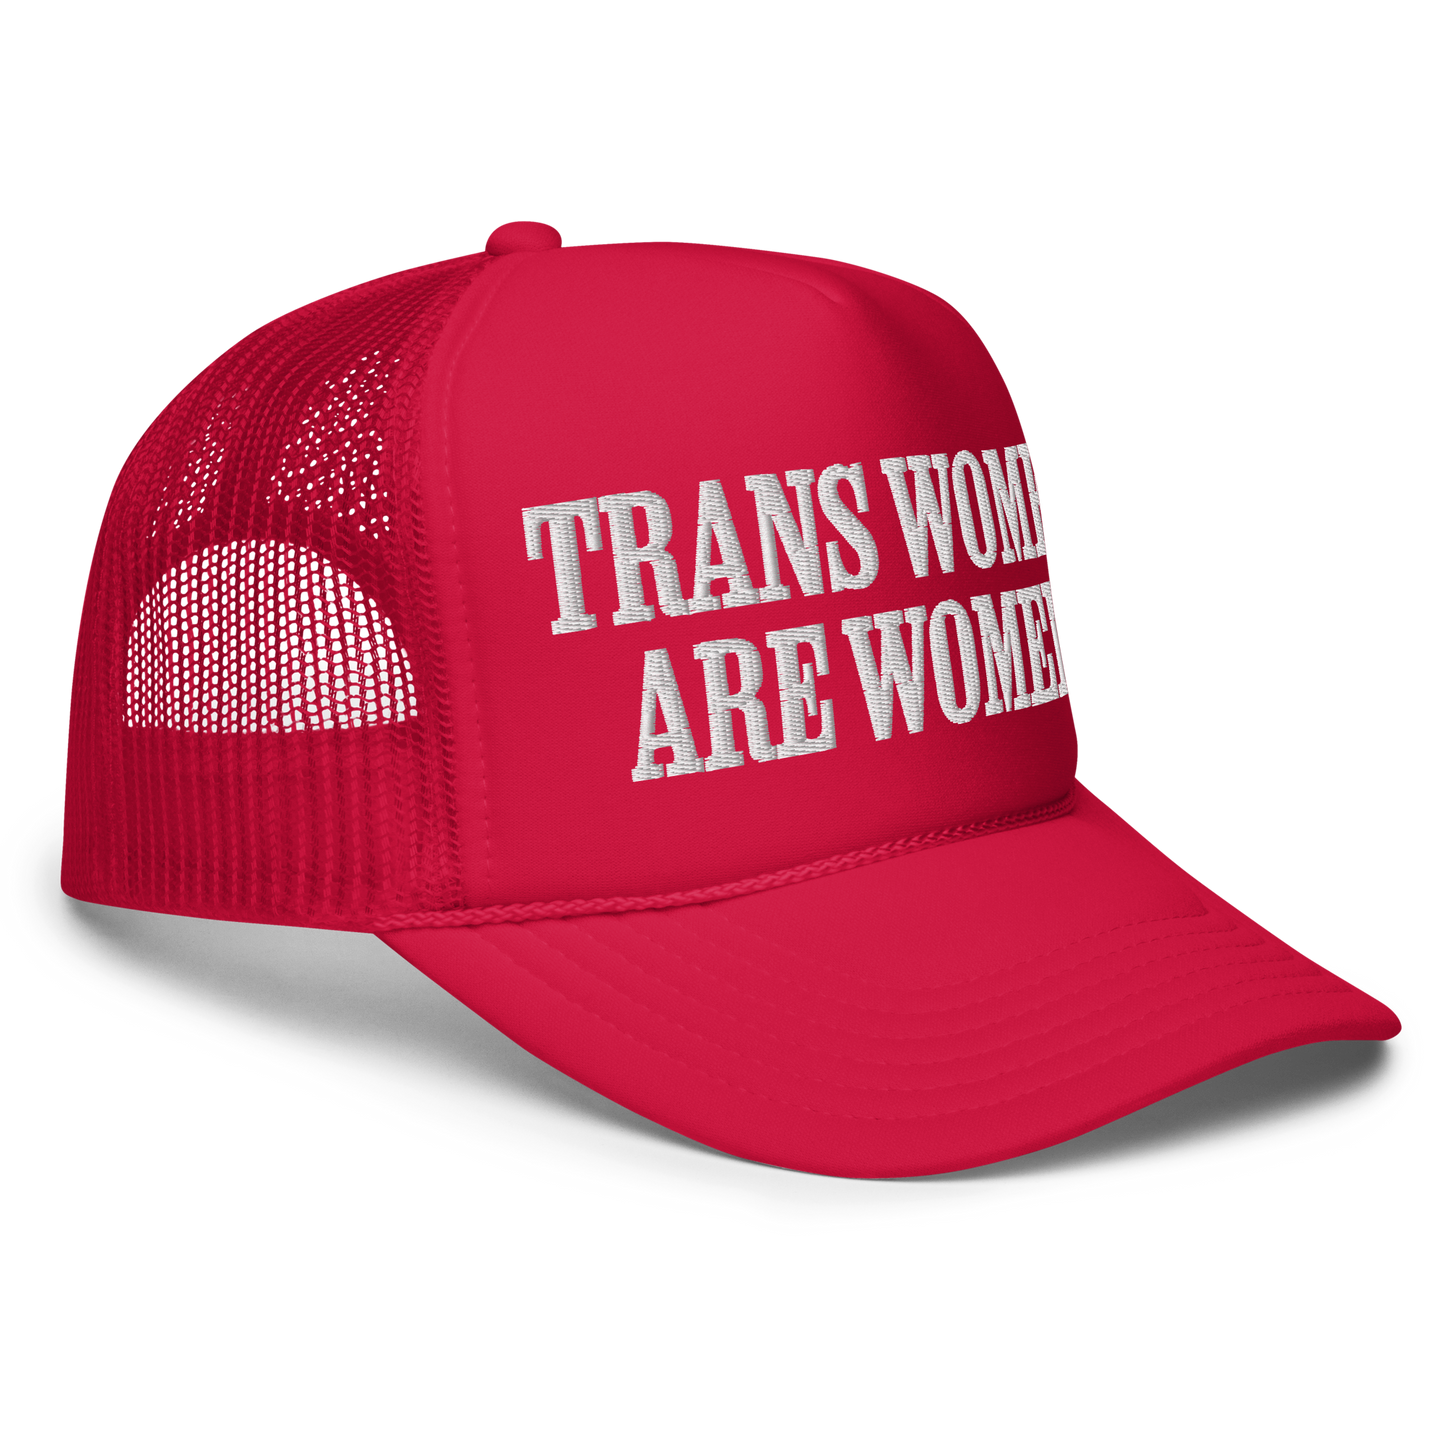 TRANS WOMEN ARE WOMEN • UNISEX TRUCKER HAT